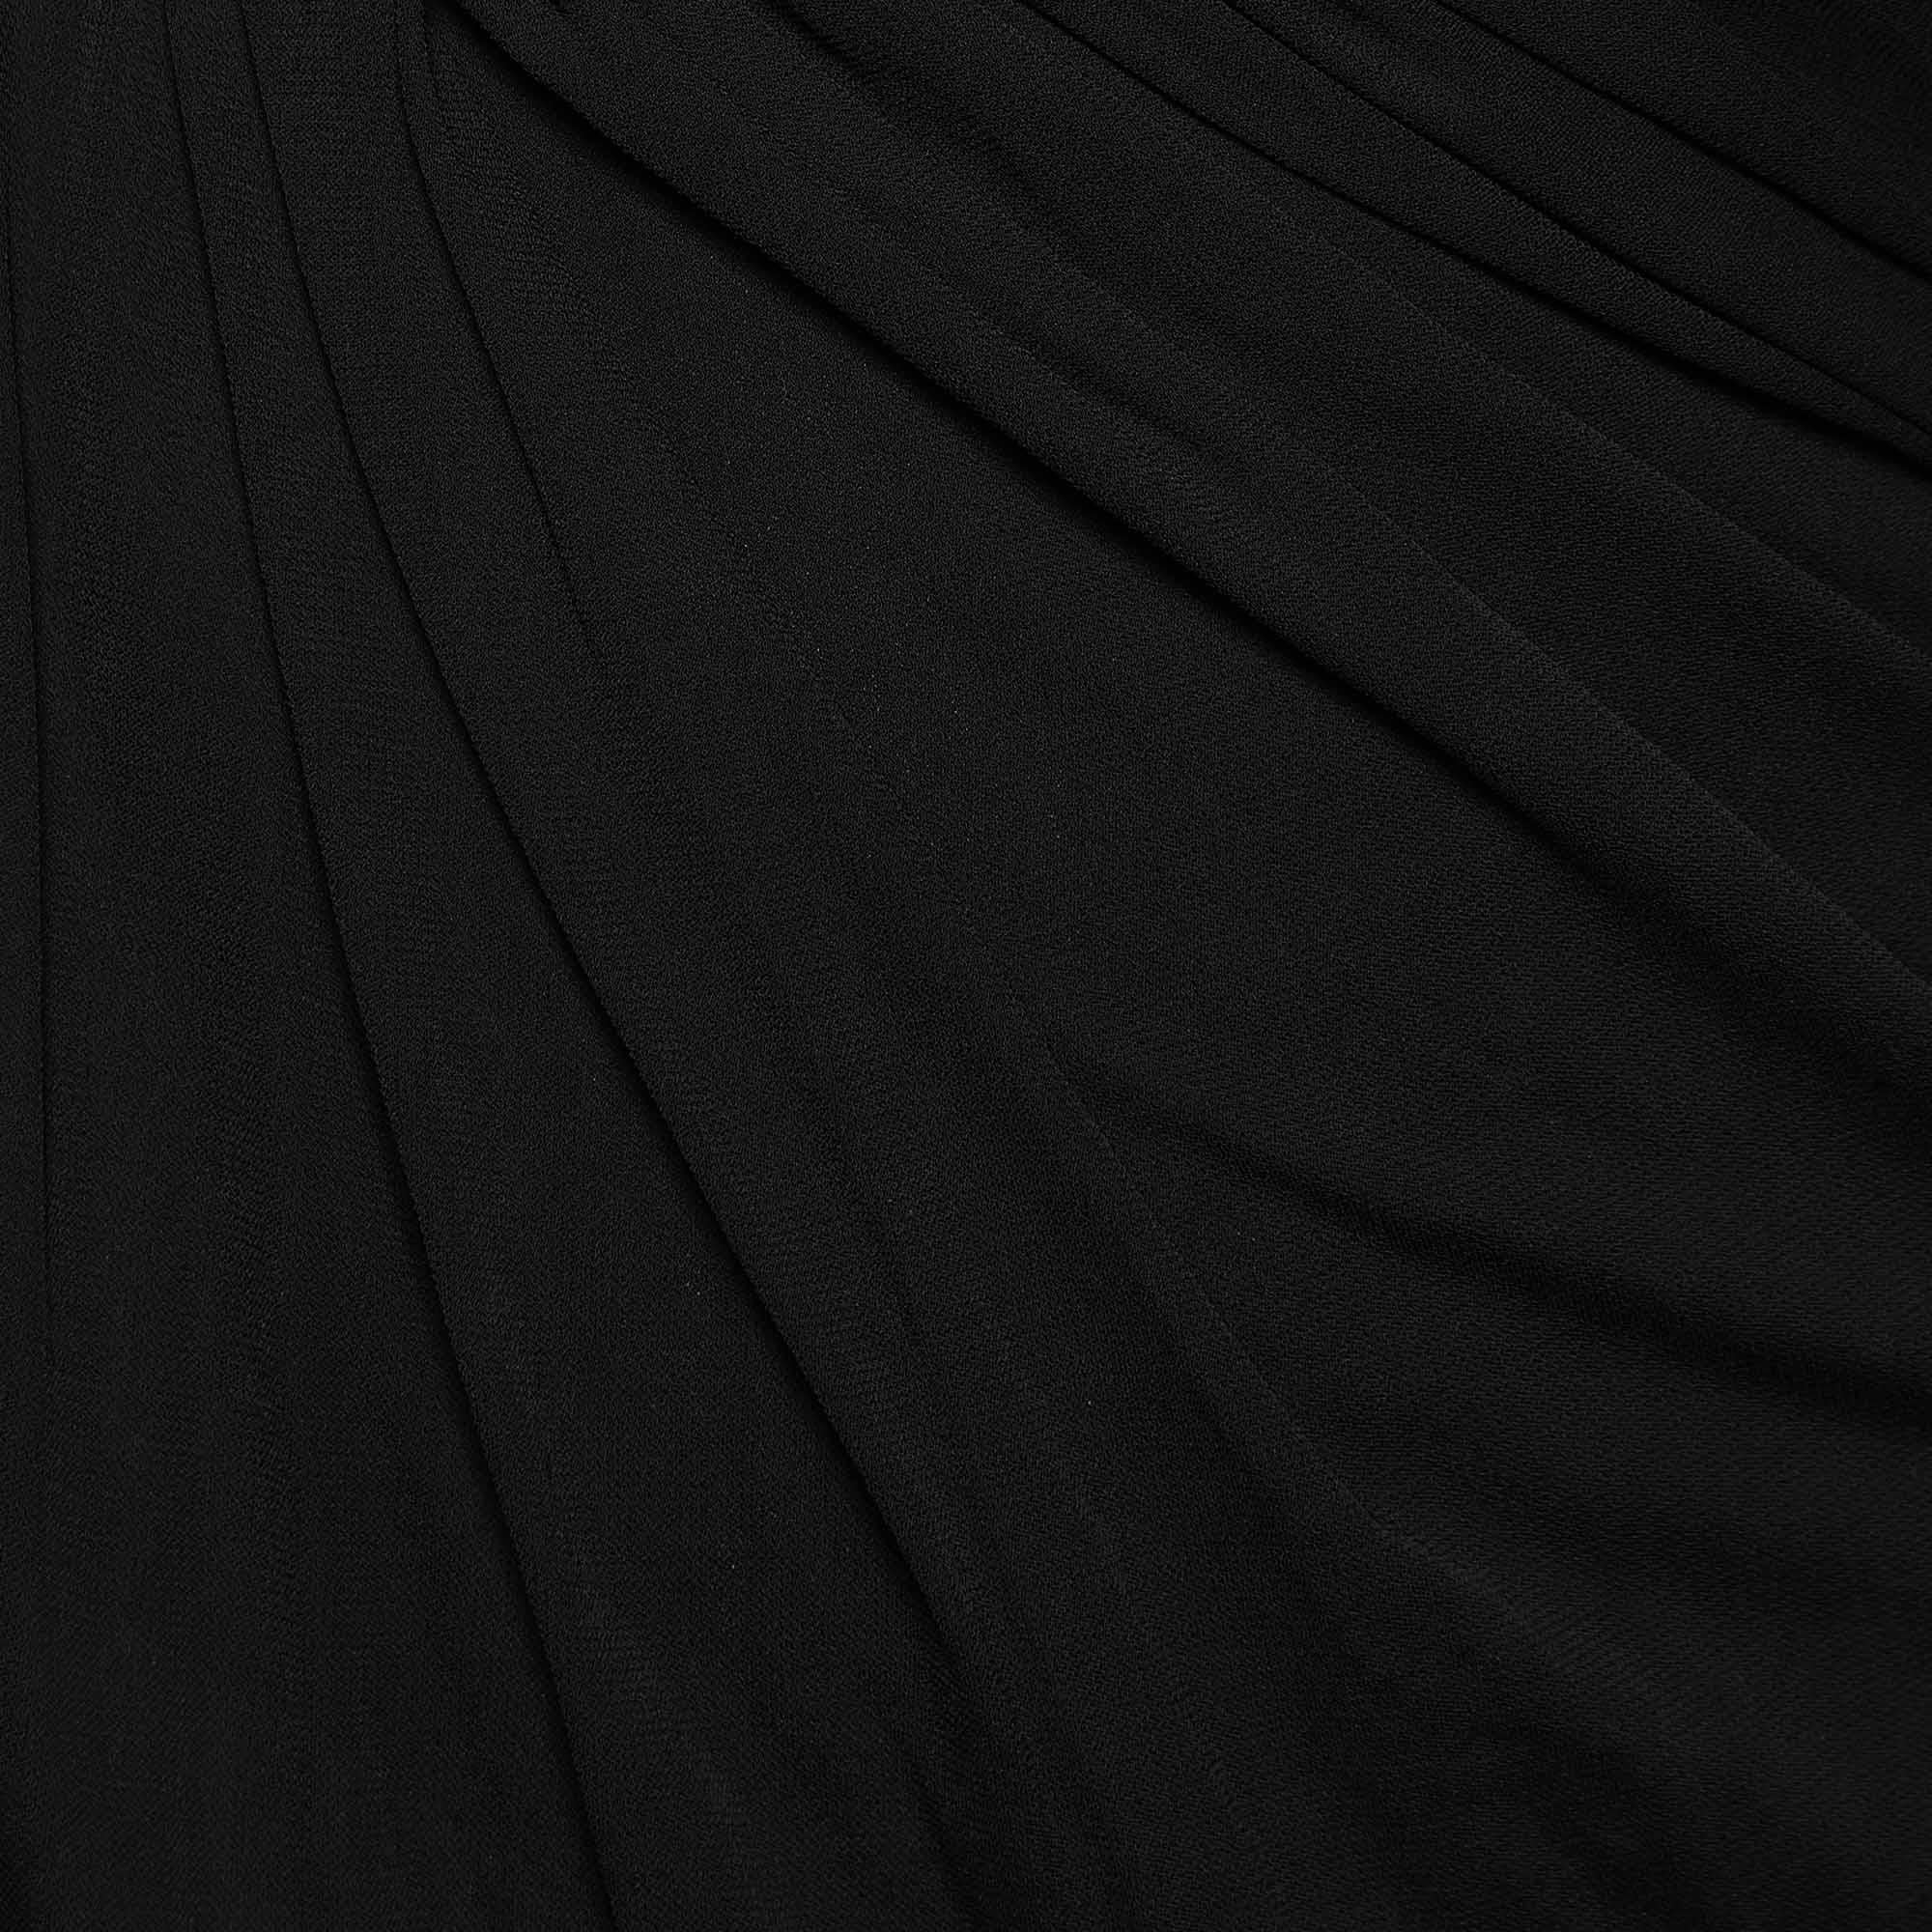 Saint Laurent Black Crepe & Jersey Draped Gown S For Sale 1